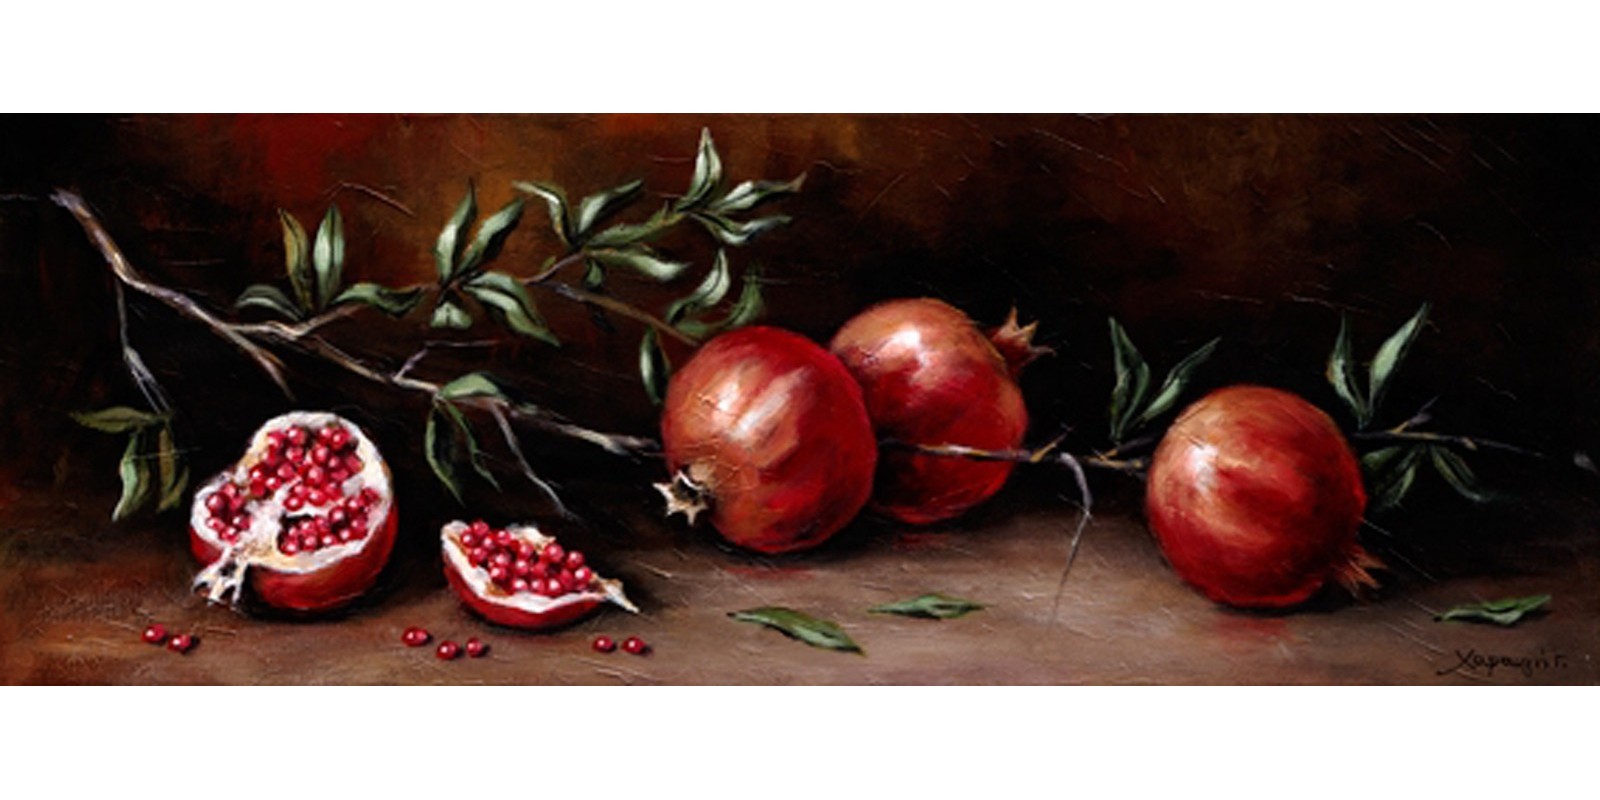 Χαραυγή Γ. - Pomegranate branch